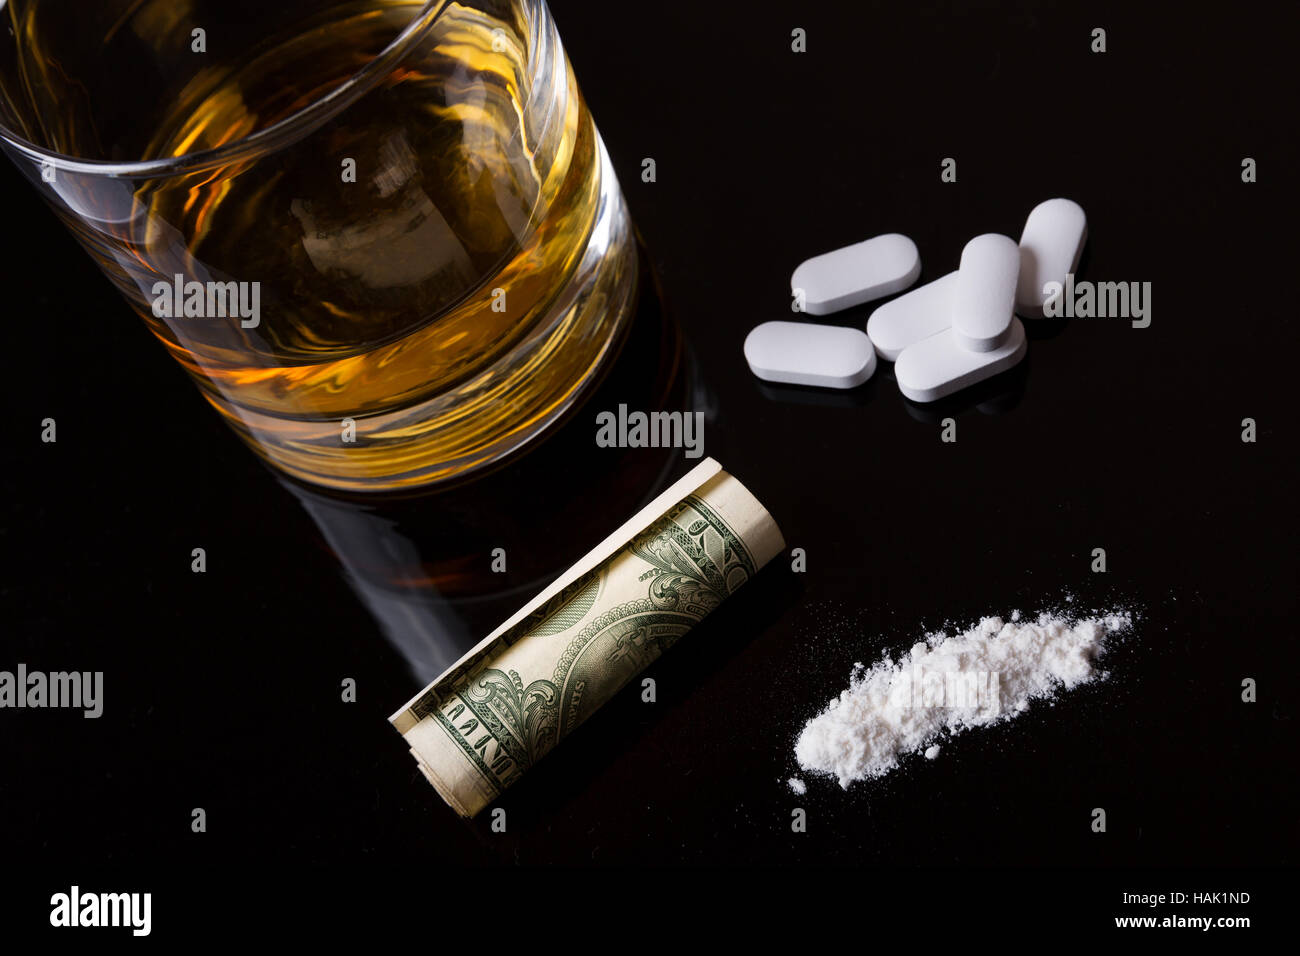 La dépendance à la drogue - Alcool, drogues et la cocaïne Banque D'Images